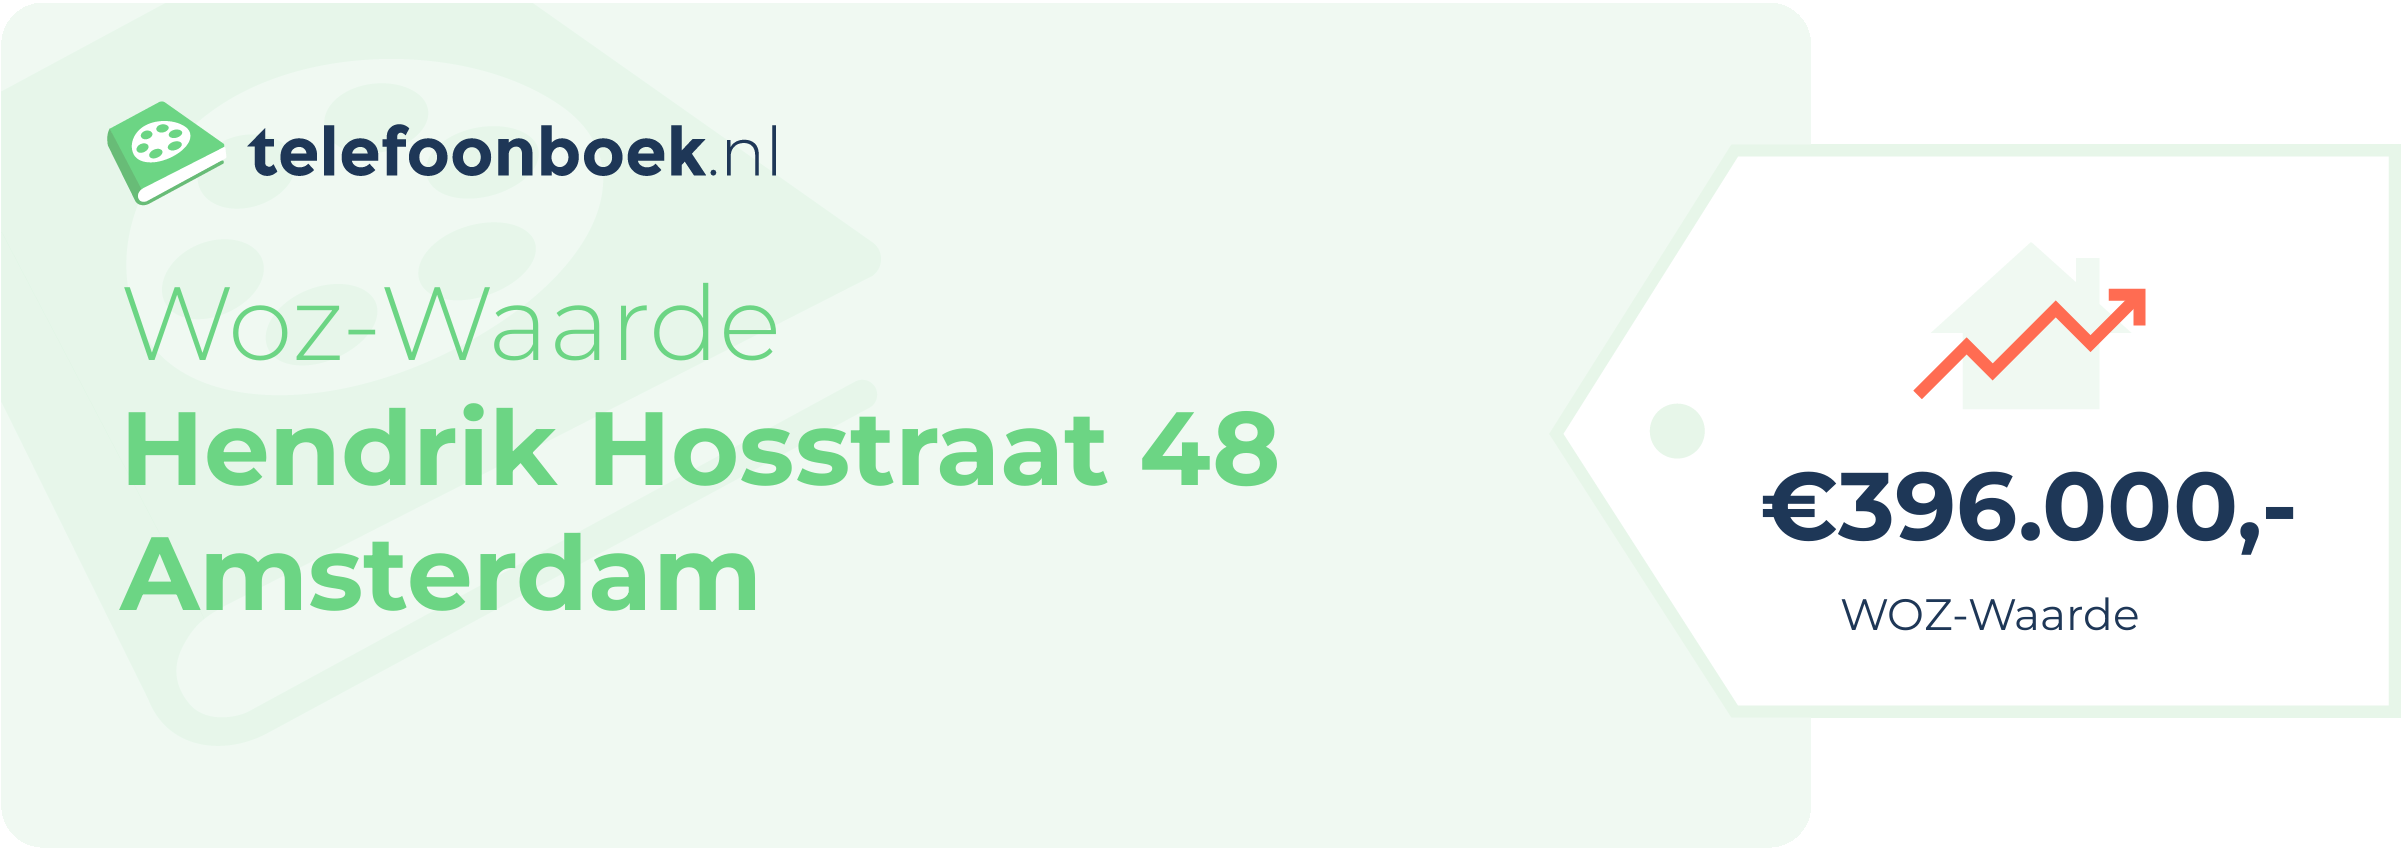 WOZ-waarde Hendrik Hosstraat 48 Amsterdam